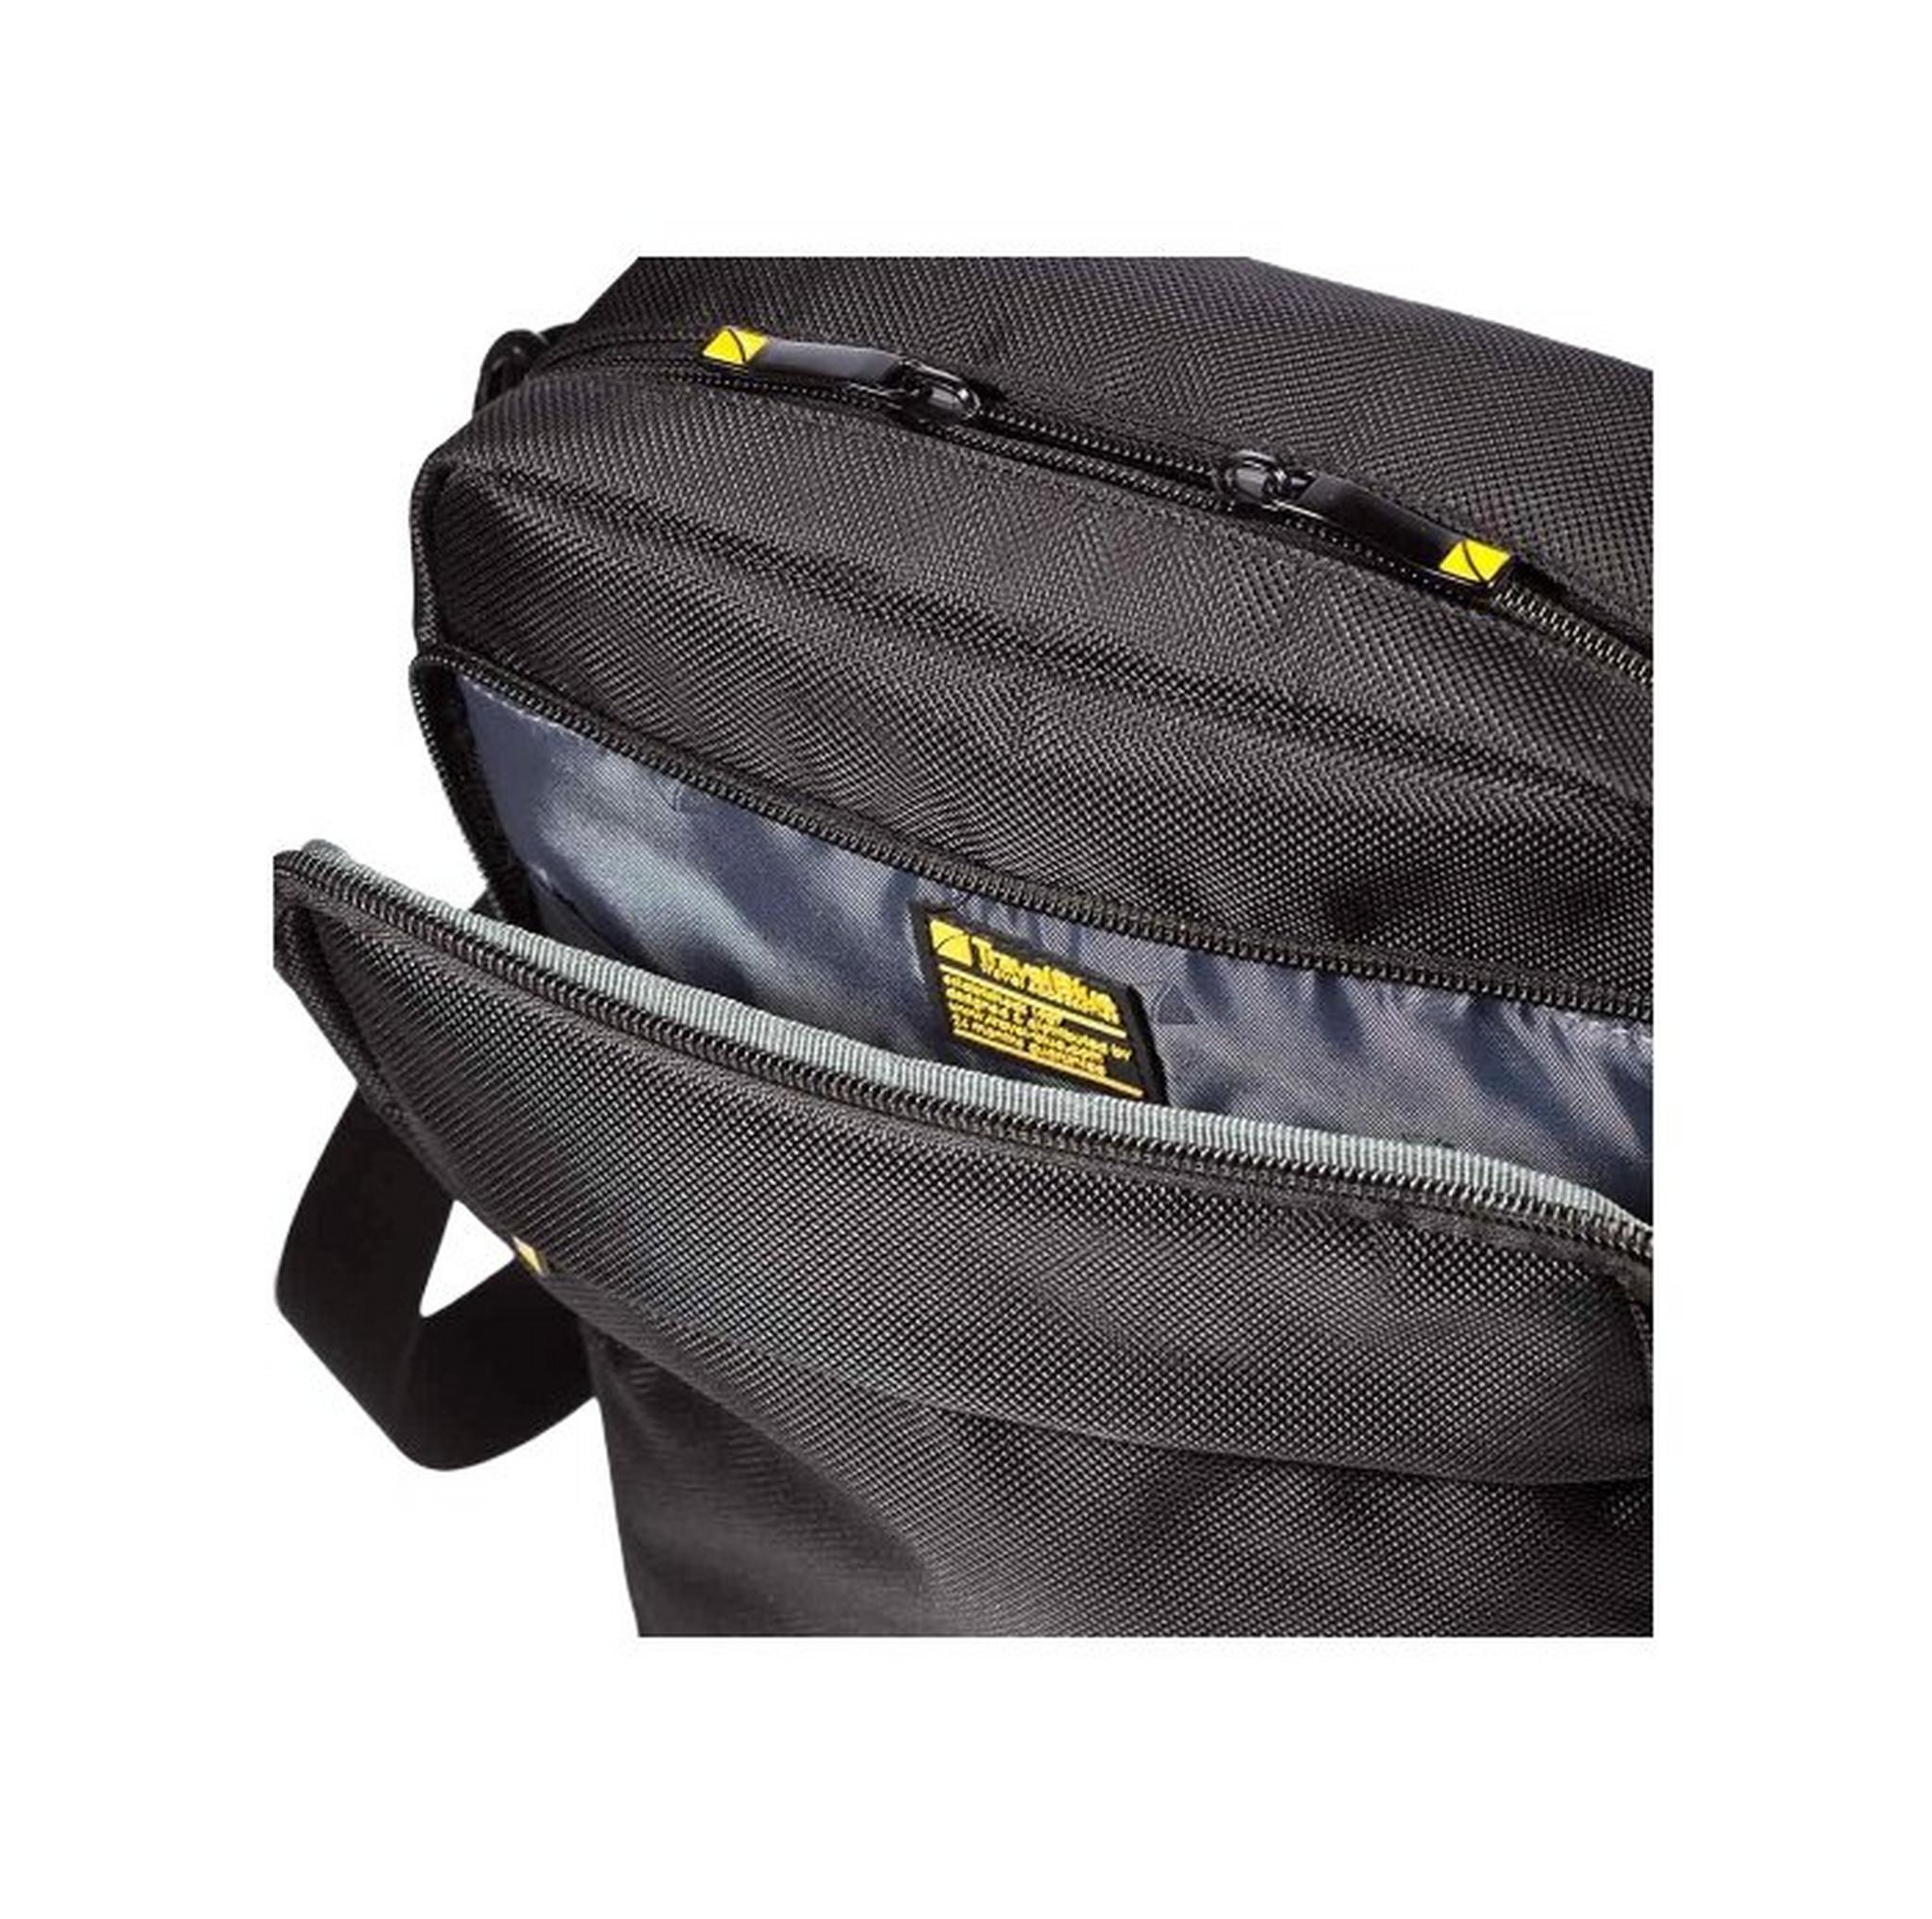 Travel Blue Executive Shoulder Bag 811 - Black